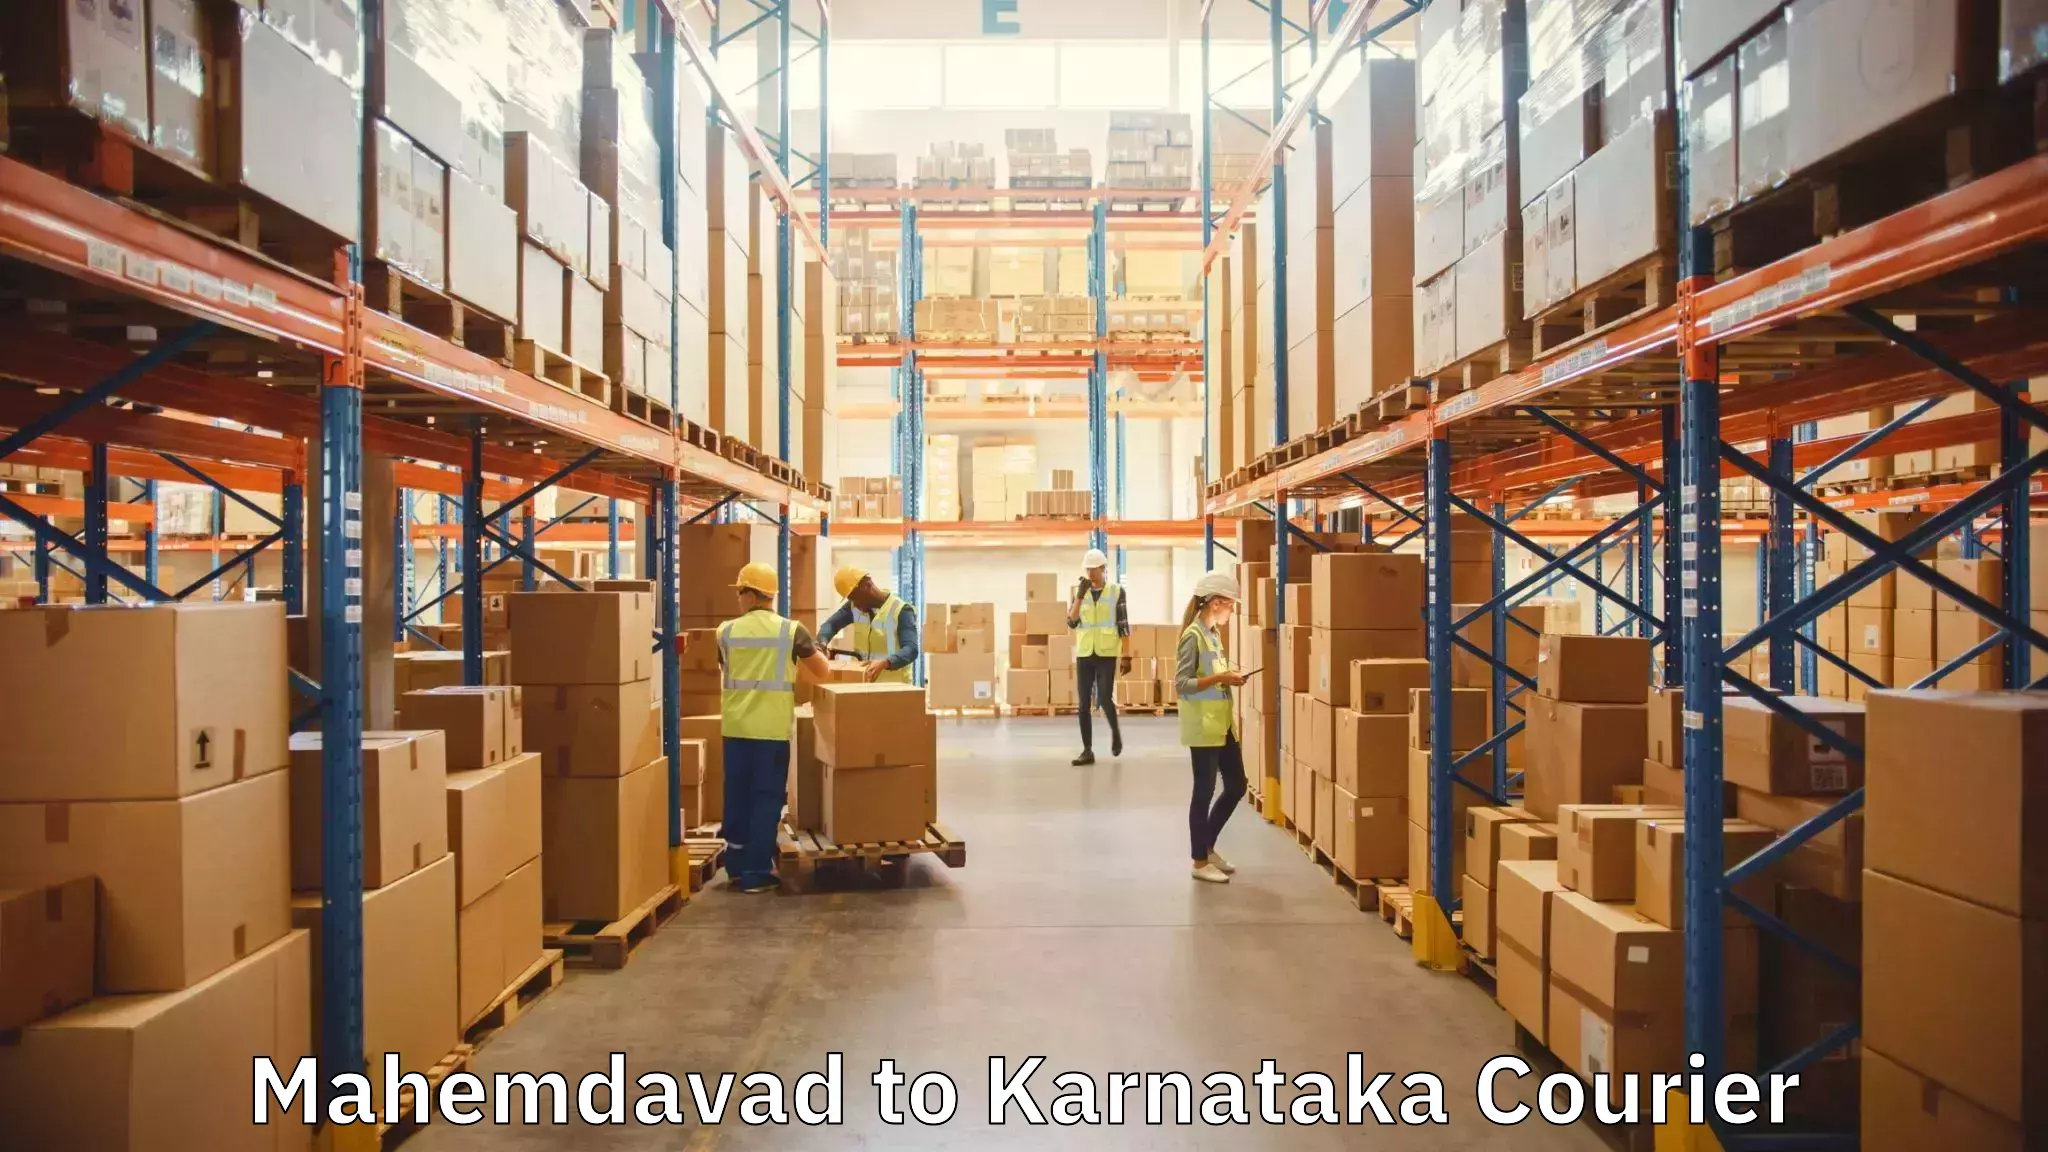 Furniture relocation experts Mahemdavad to Yenepoya Mangalore